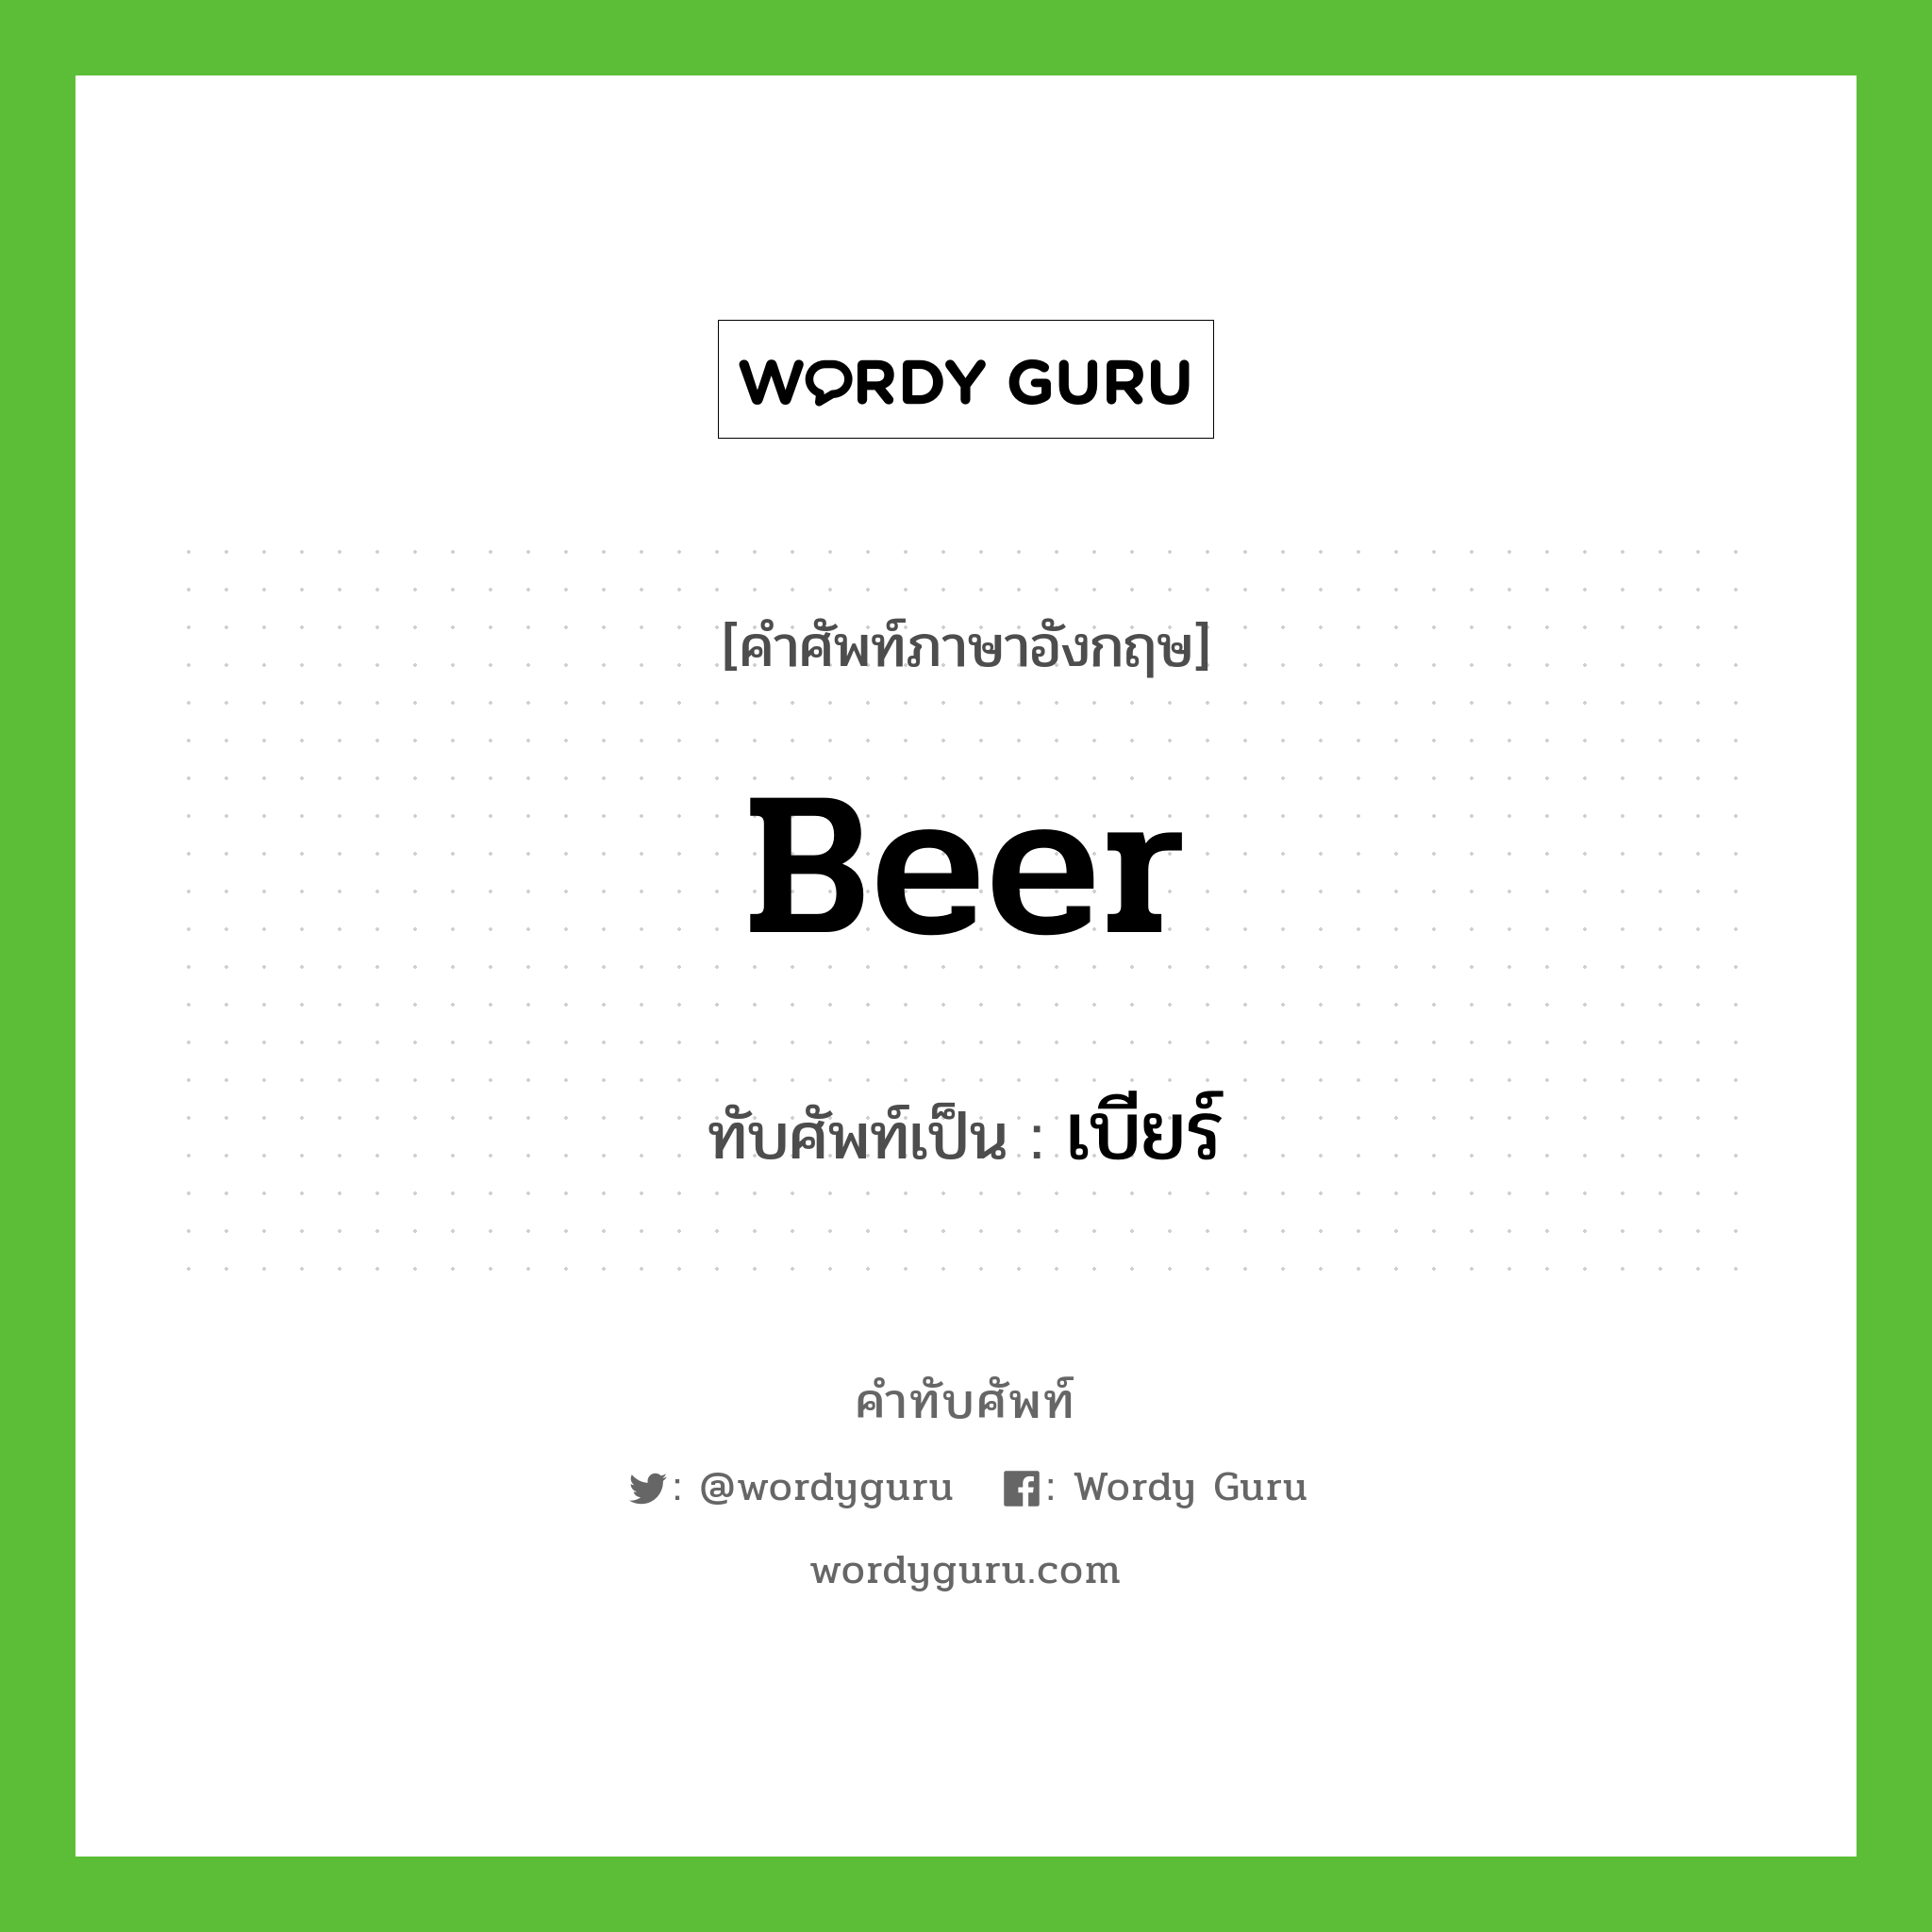 เบียร์ เขียนอย่างไร?, คำศัพท์ภาษาอังกฤษ เบียร์ ทับศัพท์เป็น beer